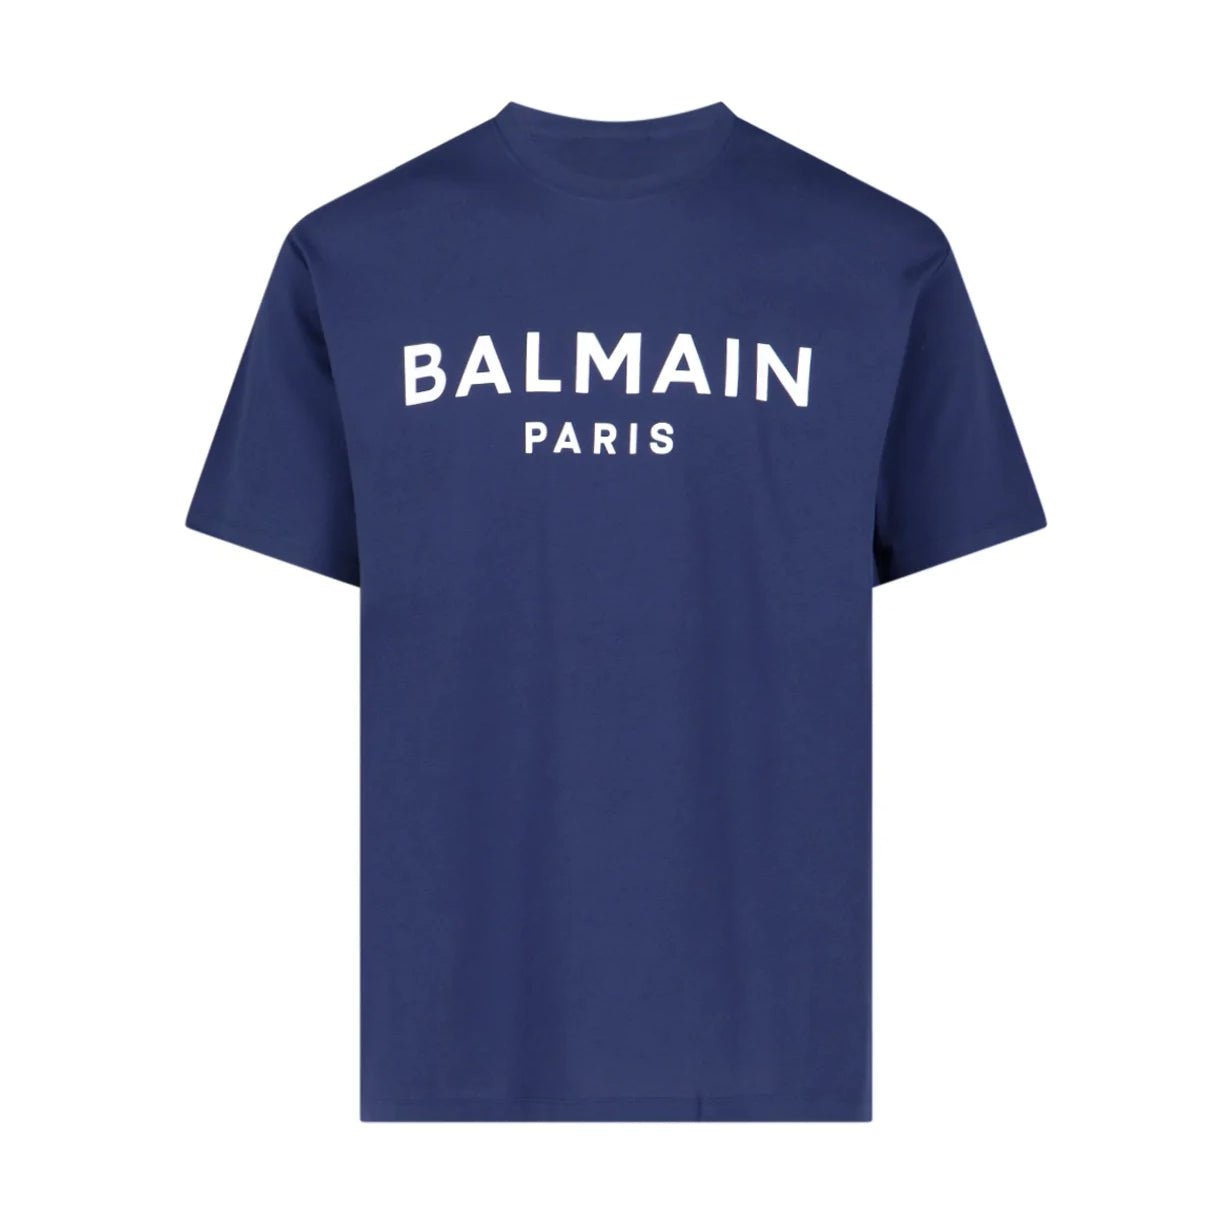 Balmain Paris logo Tsh - SJW Marine/Wh - Escape Menswear